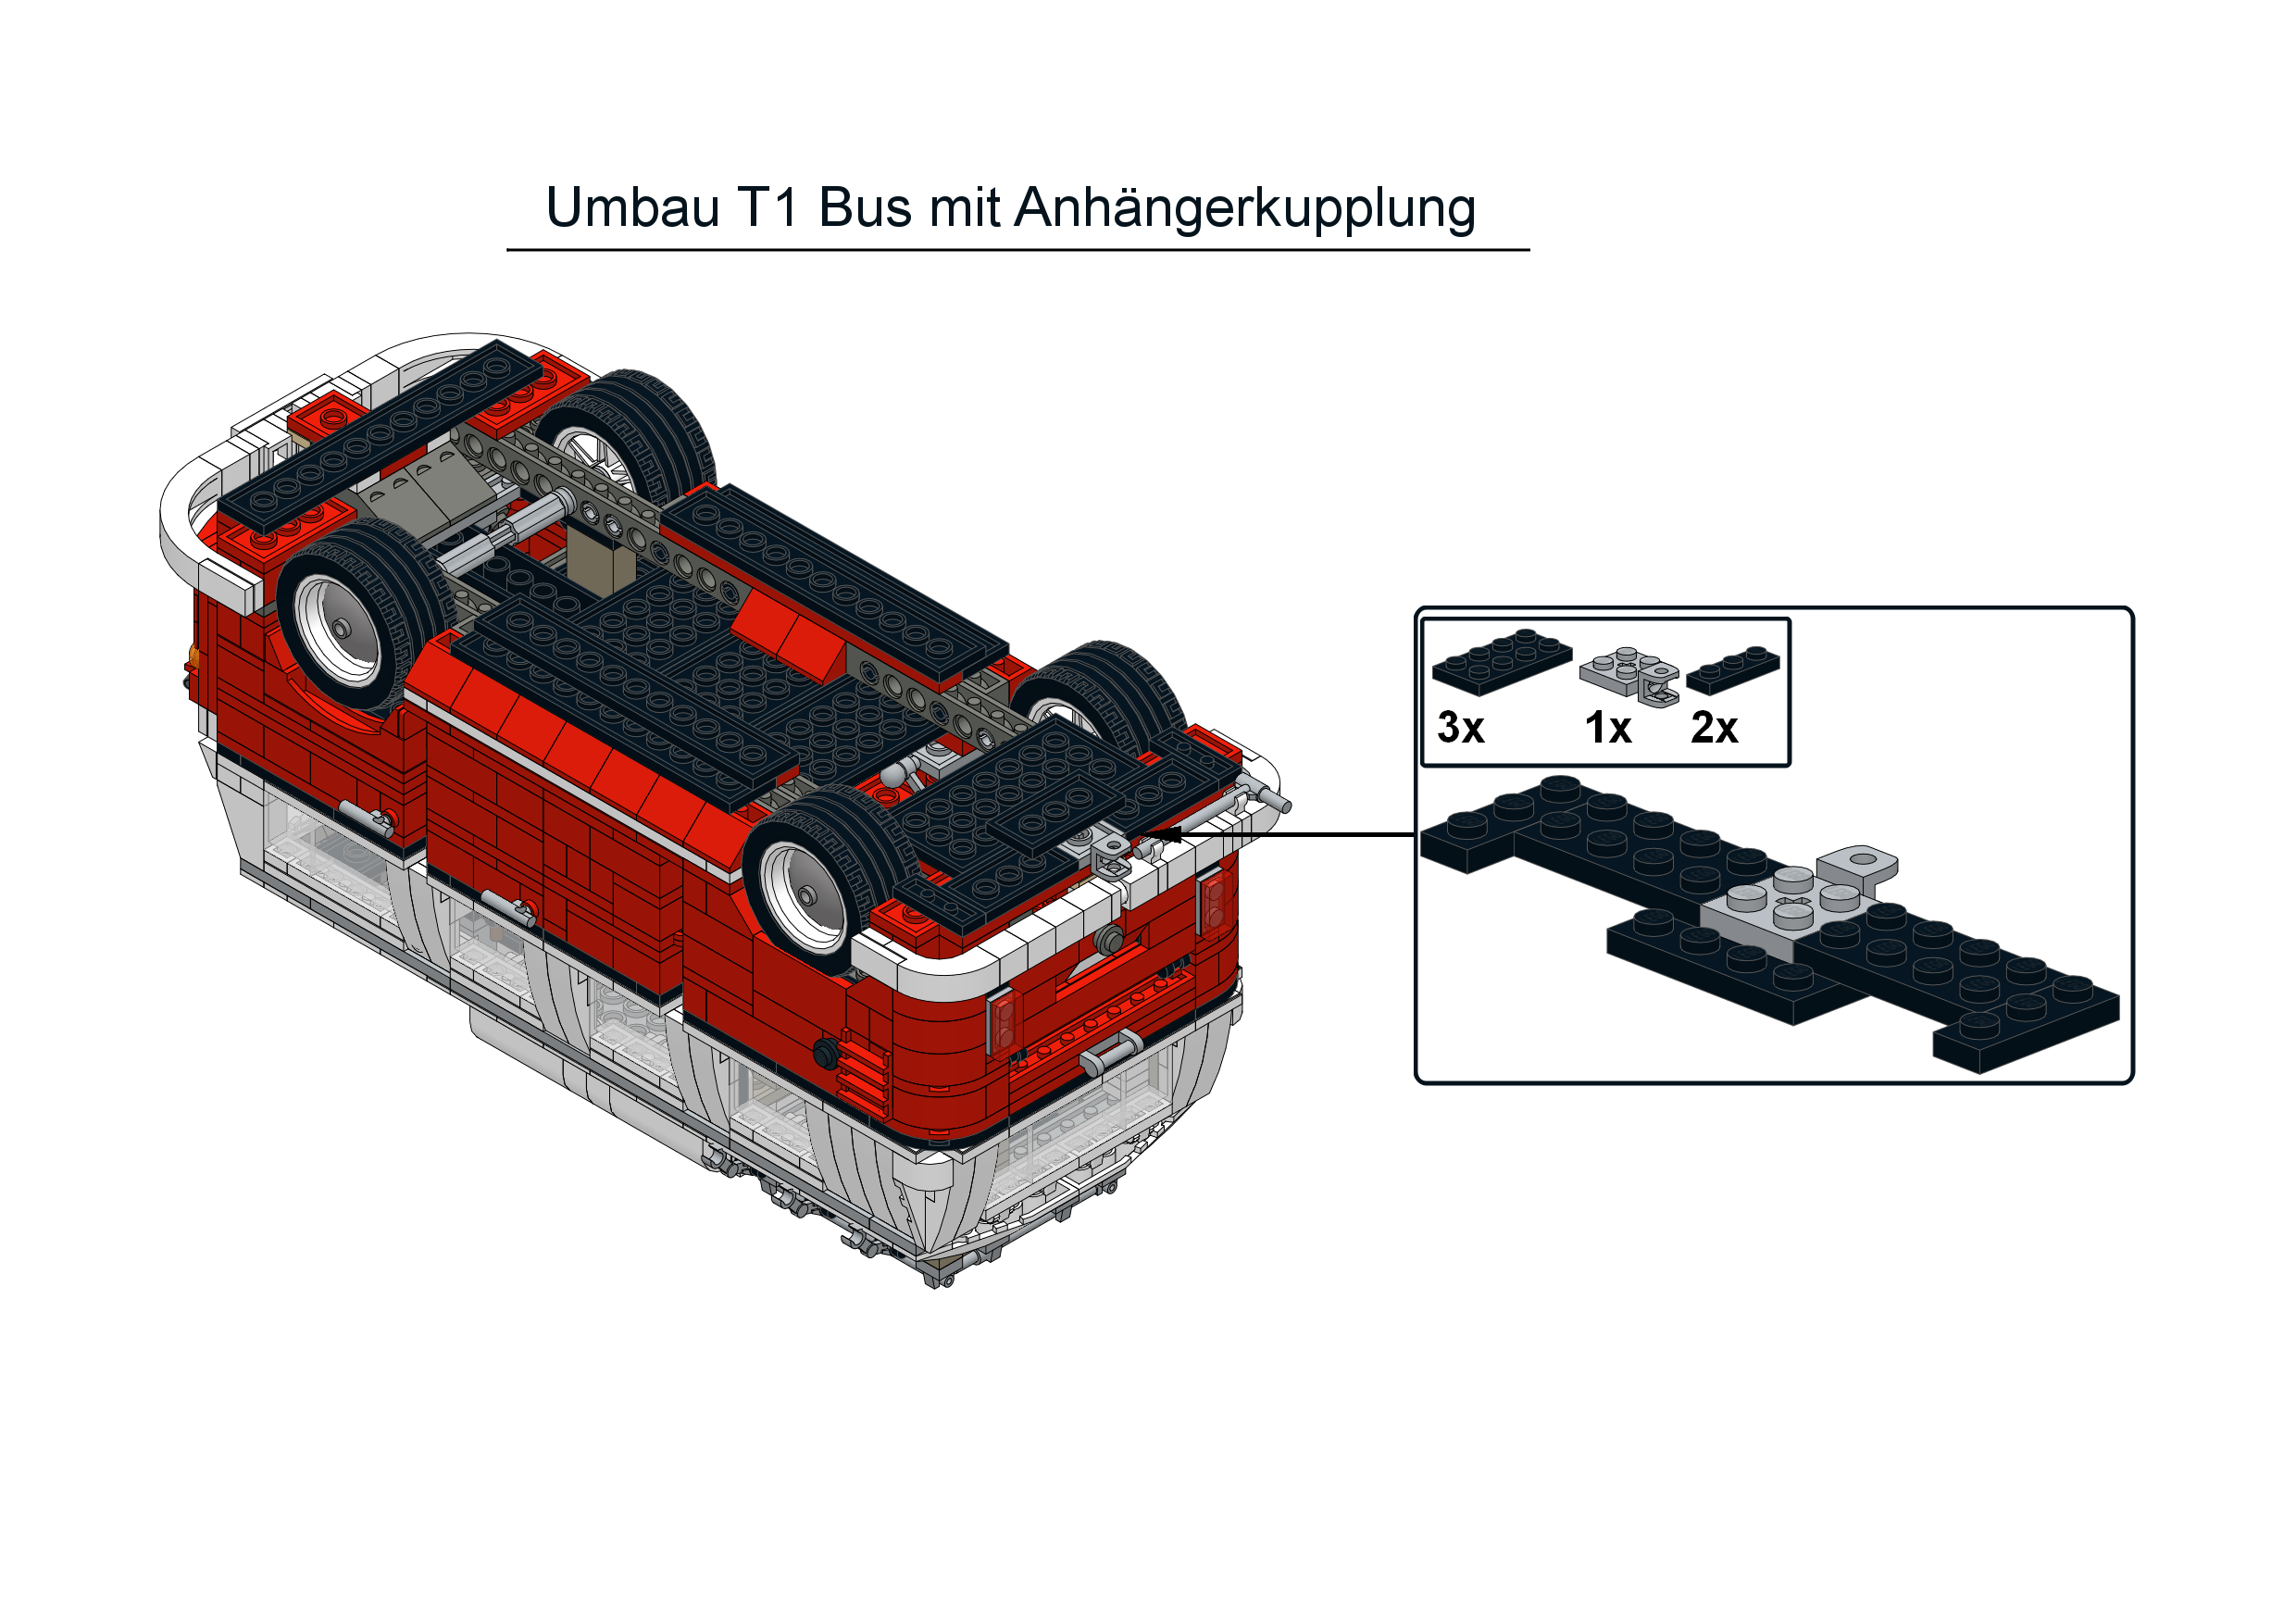 LEGO® 10220 Creator Volkswagen T1 camper van - Markenwelt Voegele